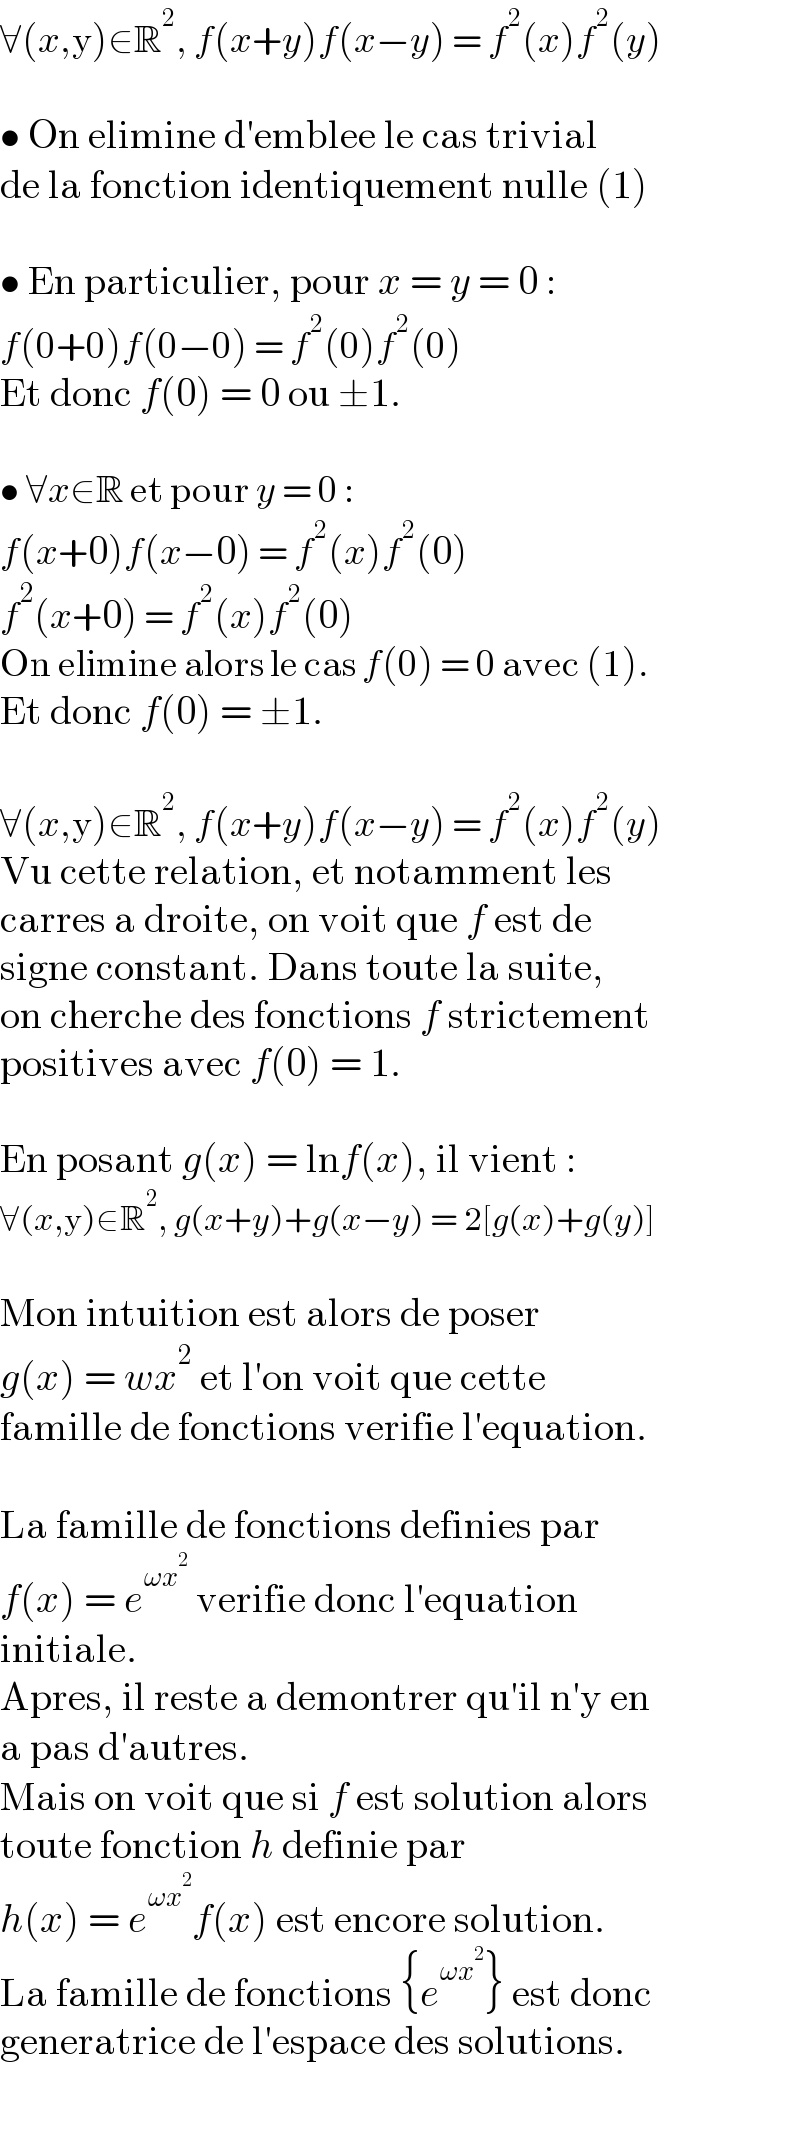 ∀(x,y)∈R^2 , f(x+y)f(x−y) = f^2 (x)f^2 (y)    • On elimine d′emblee le cas trivial  de la fonction identiquement nulle (1)    • En particulier, pour x = y = 0 :  f(0+0)f(0−0) = f^2 (0)f^2 (0)  Et donc f(0) = 0 ou ±1.     • ∀x∈R et pour y = 0 :  f(x+0)f(x−0) = f^2 (x)f^2 (0)  f^2 (x+0) = f^2 (x)f^2 (0)  On elimine alors le cas f(0) = 0 avec (1).  Et donc f(0) = ±1.    ∀(x,y)∈R^2 , f(x+y)f(x−y) = f^2 (x)f^2 (y)  Vu cette relation, et notamment les  carres a droite, on voit que f est de  signe constant. Dans toute la suite,  on cherche des fonctions f strictement  positives avec f(0) = 1.    En posant g(x) = lnf(x), il vient :  ∀(x,y)∈R^2 , g(x+y)+g(x−y) = 2[g(x)+g(y)]    Mon intuition est alors de poser  g(x) = wx^2  et l′on voit que cette  famille de fonctions verifie l′equation.    La famille de fonctions definies par  f(x) = e^(ωx^2 )  verifie donc l′equation  initiale.  Apres, il reste a demontrer qu′il n′y en  a pas d′autres.  Mais on voit que si f est solution alors  toute fonction h definie par  h(x) = e^(ωx^2 ) f(x) est encore solution.  La famille de fonctions {e^(ωx^2 ) } est donc  generatrice de l′espace des solutions.  